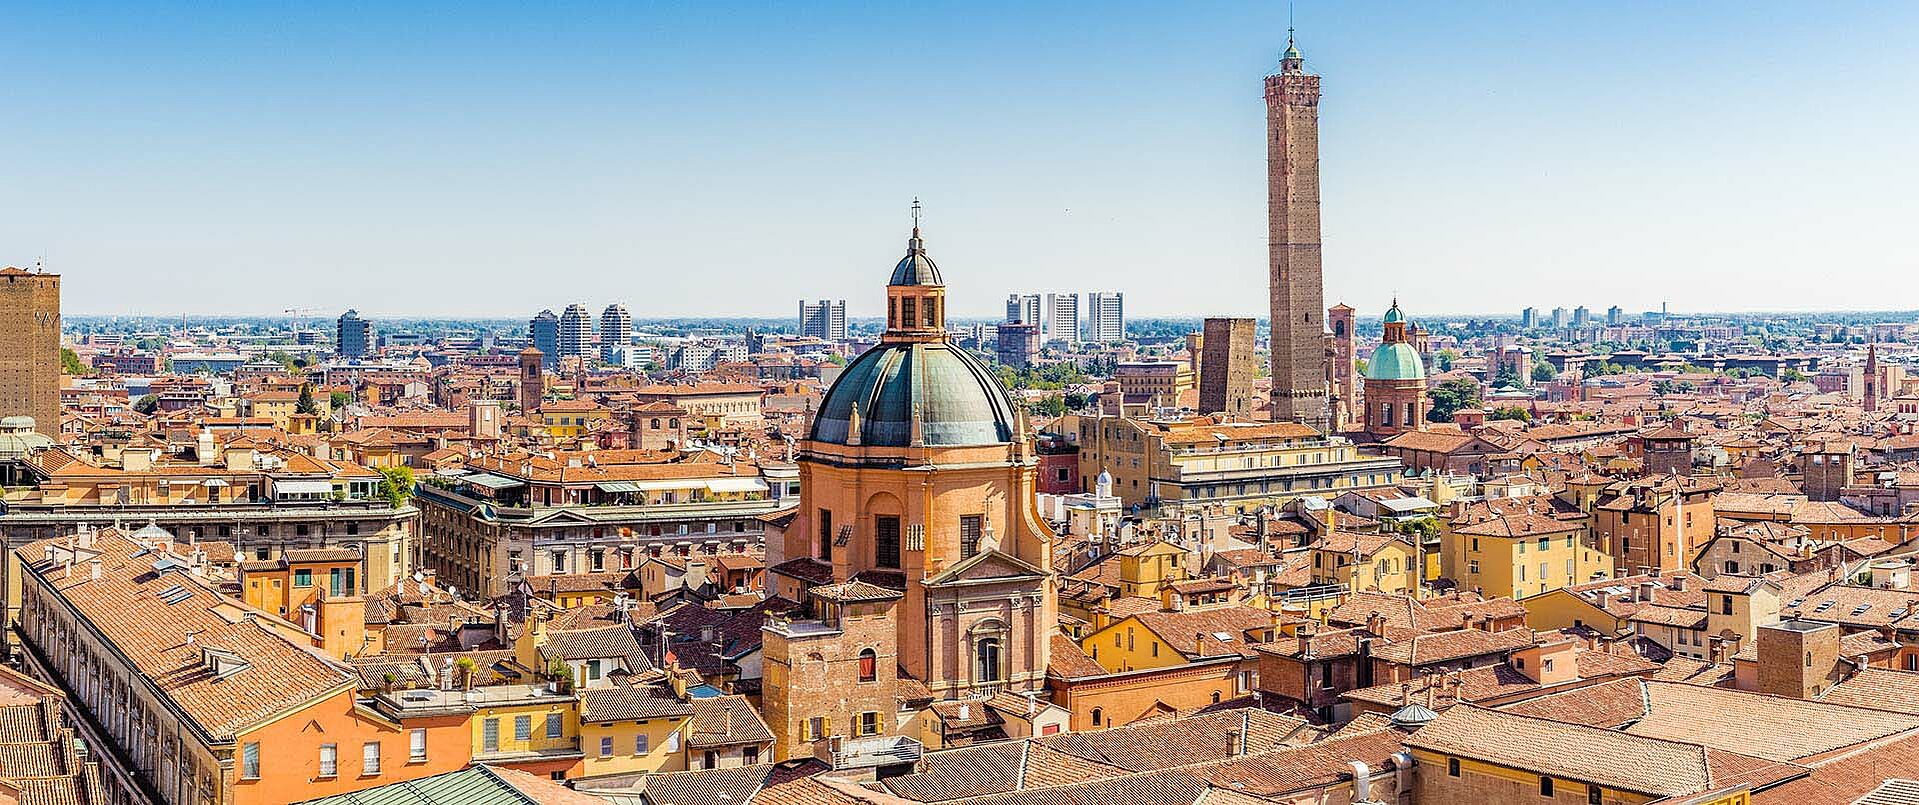 Panoramablick auf eine italienische Stadt